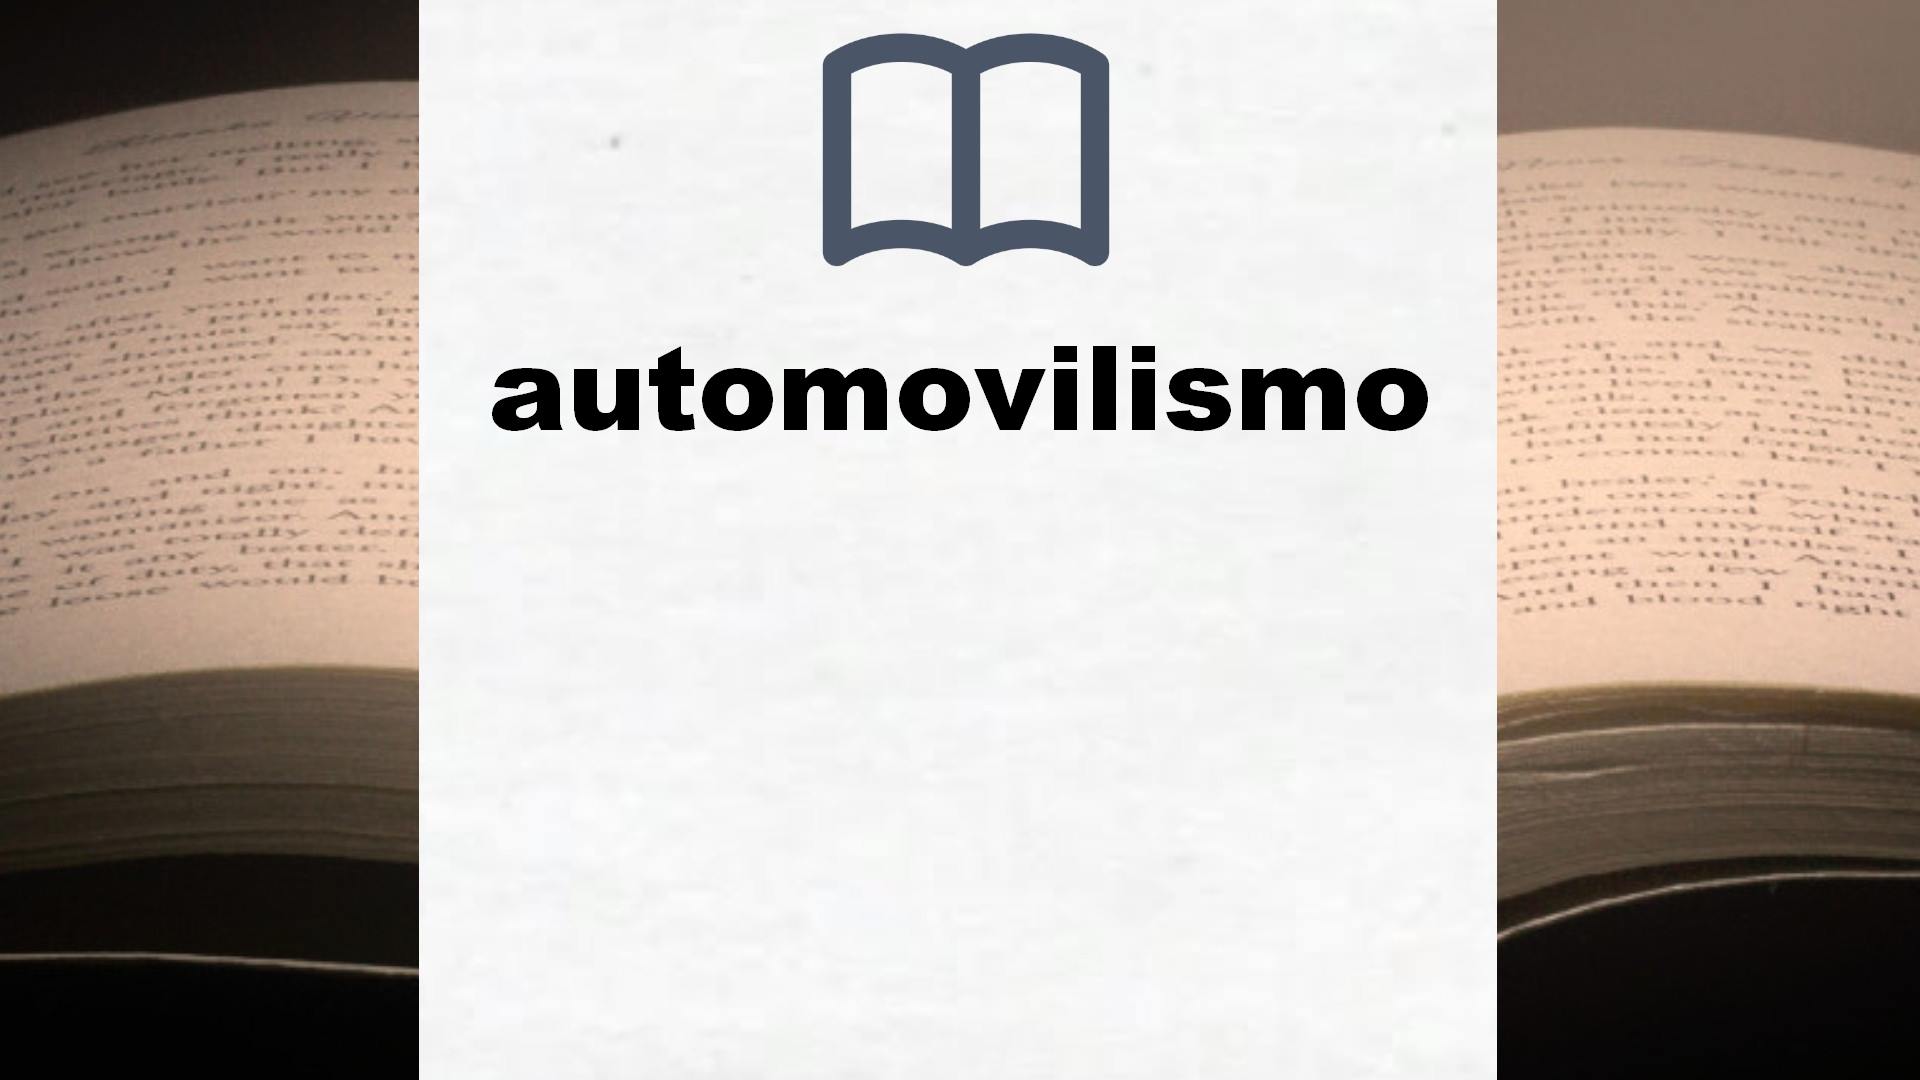 Libros sobre automovilismo